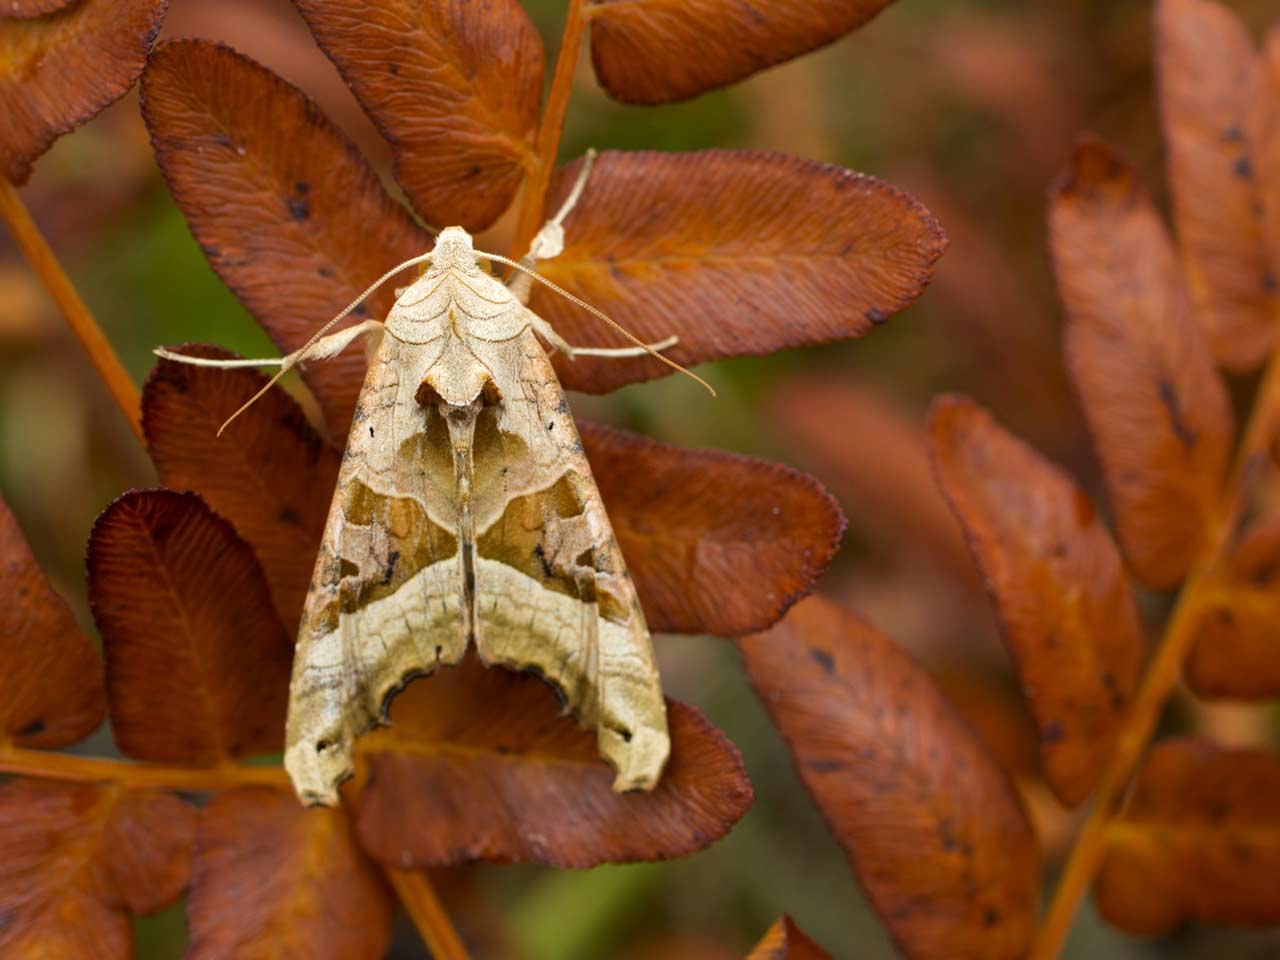 Angle shades moth